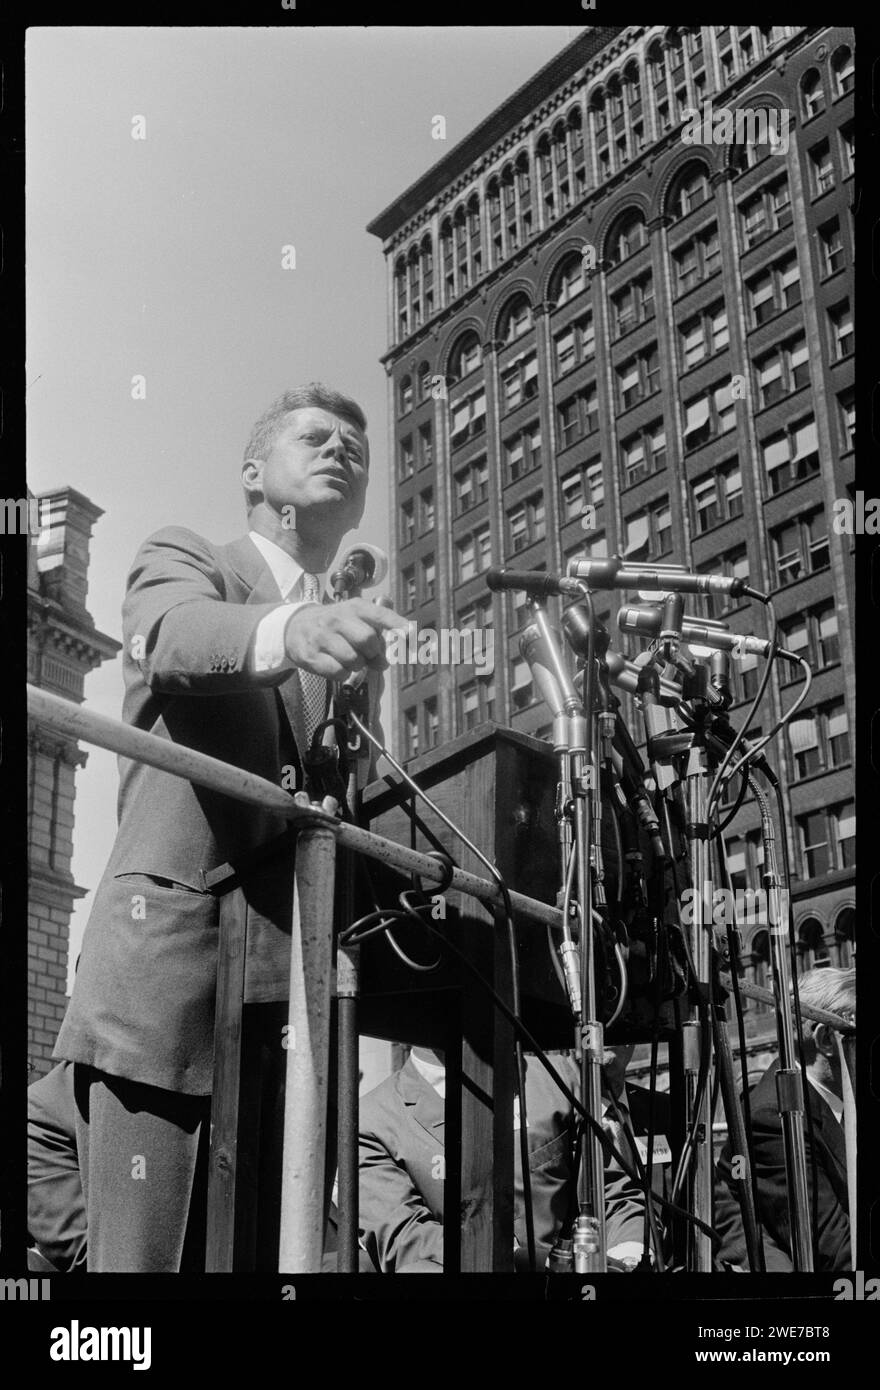 Senator John F. Kennedy sprach während seines Präsidentschaftswahlkampfes am 6. September 1960 auf dem Cadillac Square in Detroit, Michigan. Foto: US News & World Report Magazine Collection. Stockfoto